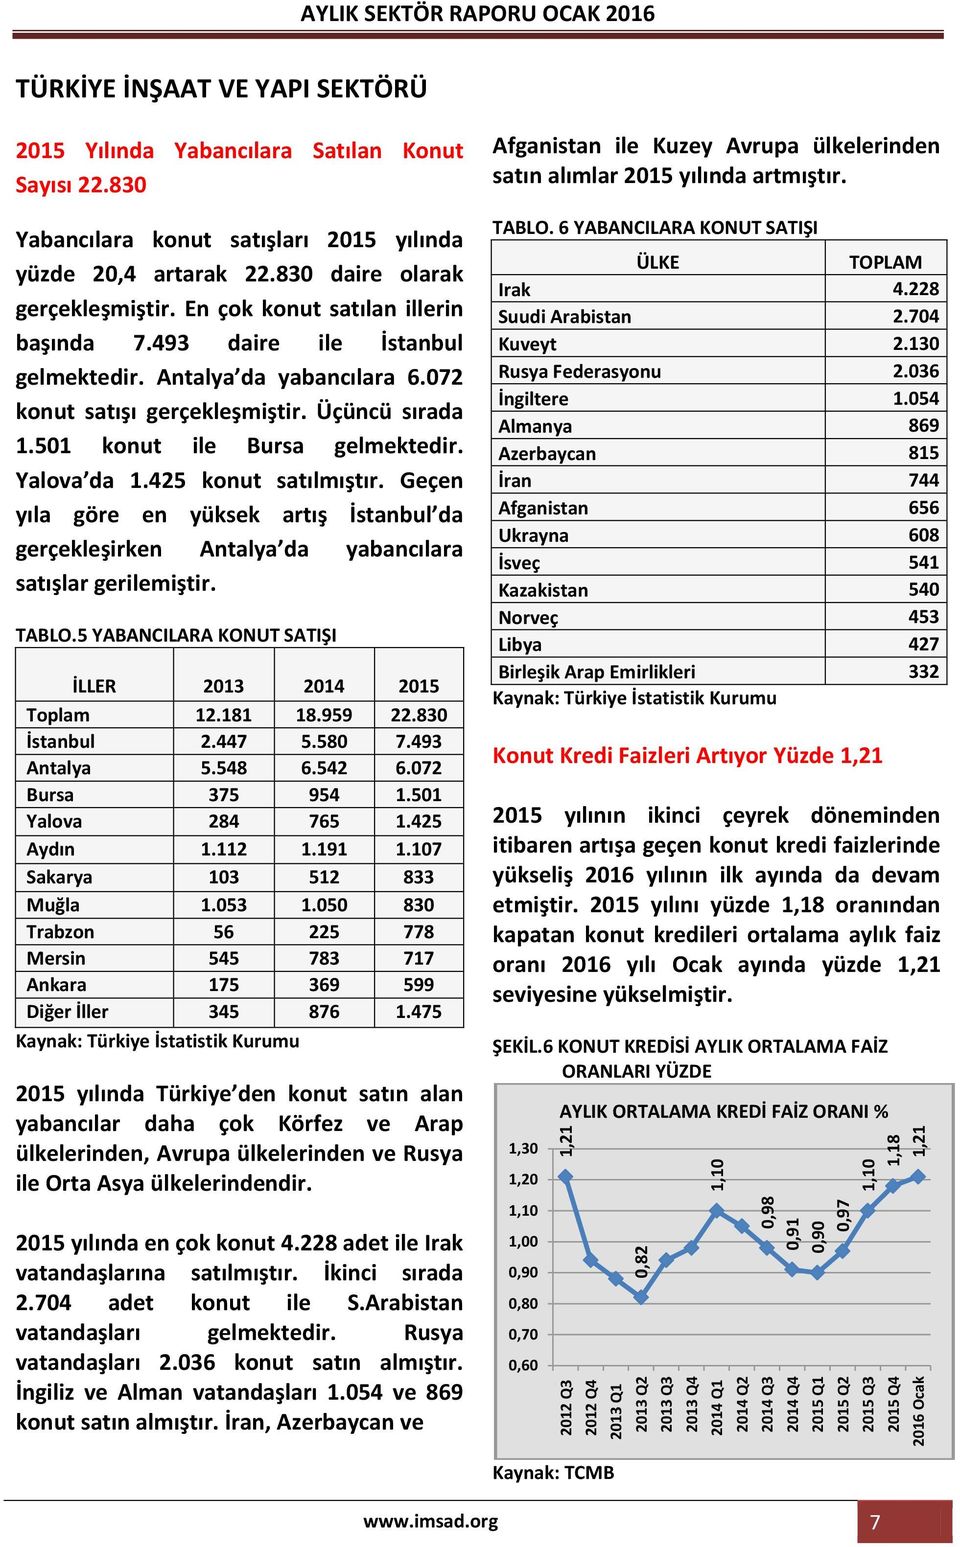 En çok konut satılan illerin başında 7.493 daire ile İstanbul gelmektedir. Antalya da yabancılara 6.072 konut satışı gerçekleşmiştir. Üçüncü sırada 1.501 konut ile Bursa gelmektedir. Yalova da 1.